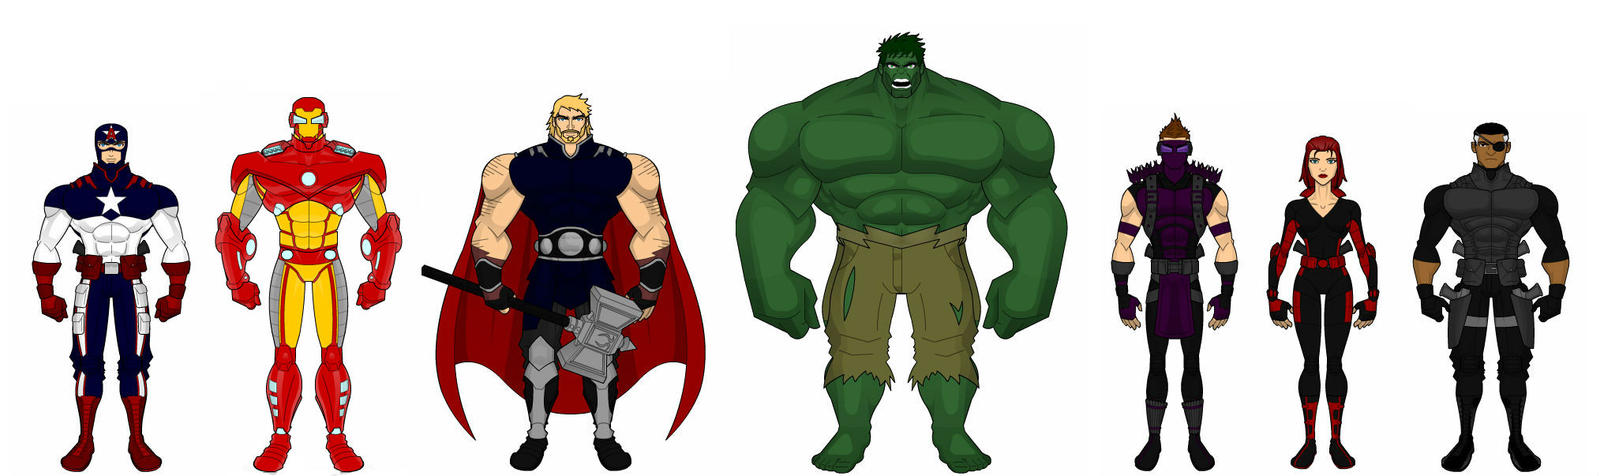 Avengers Redesign